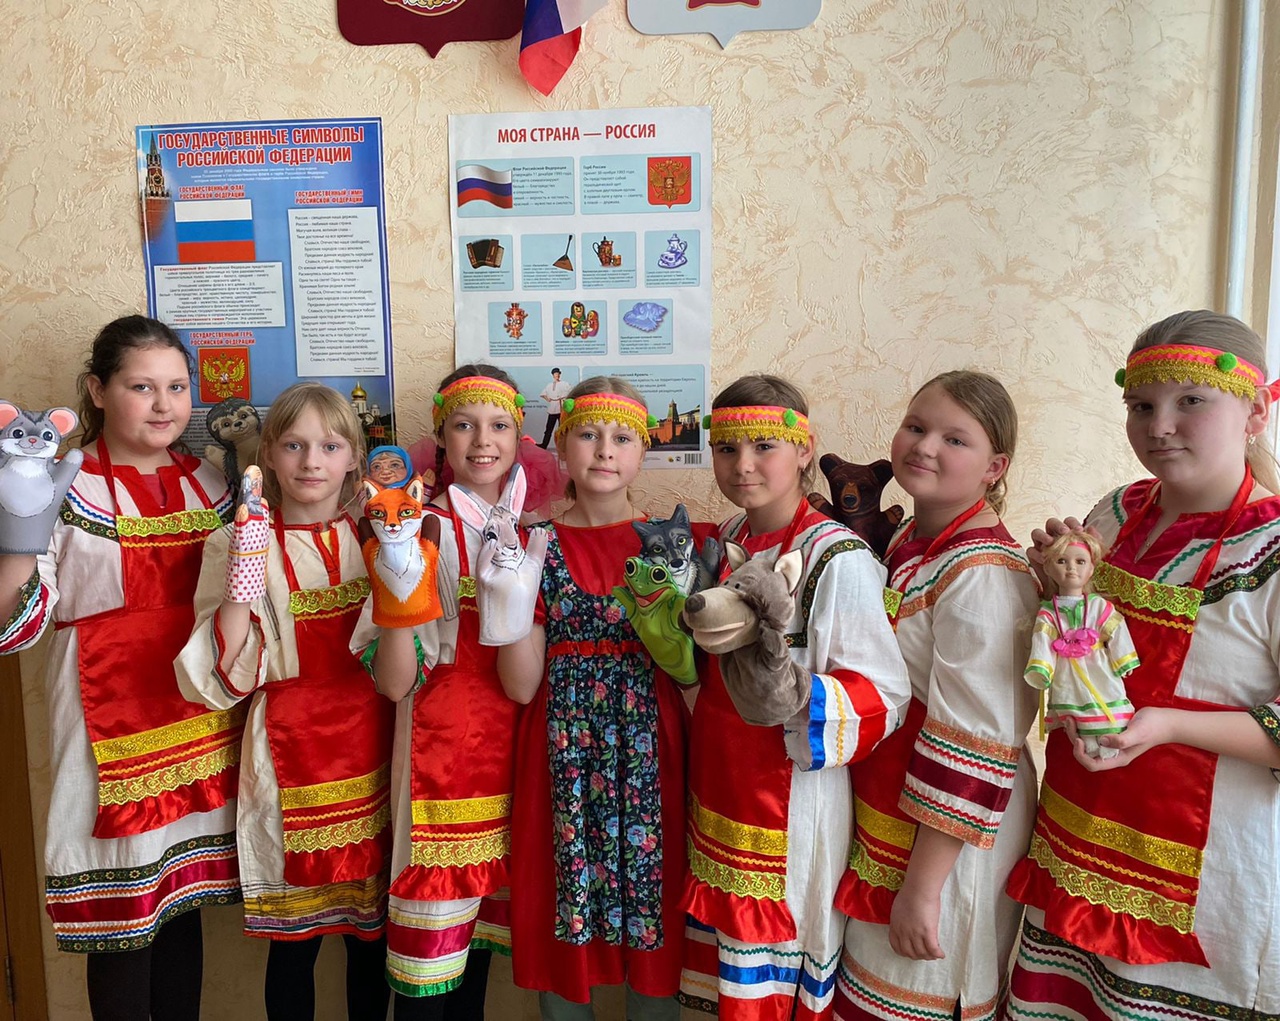 Участники представления кукольного театра По мотивам мордовских сказок